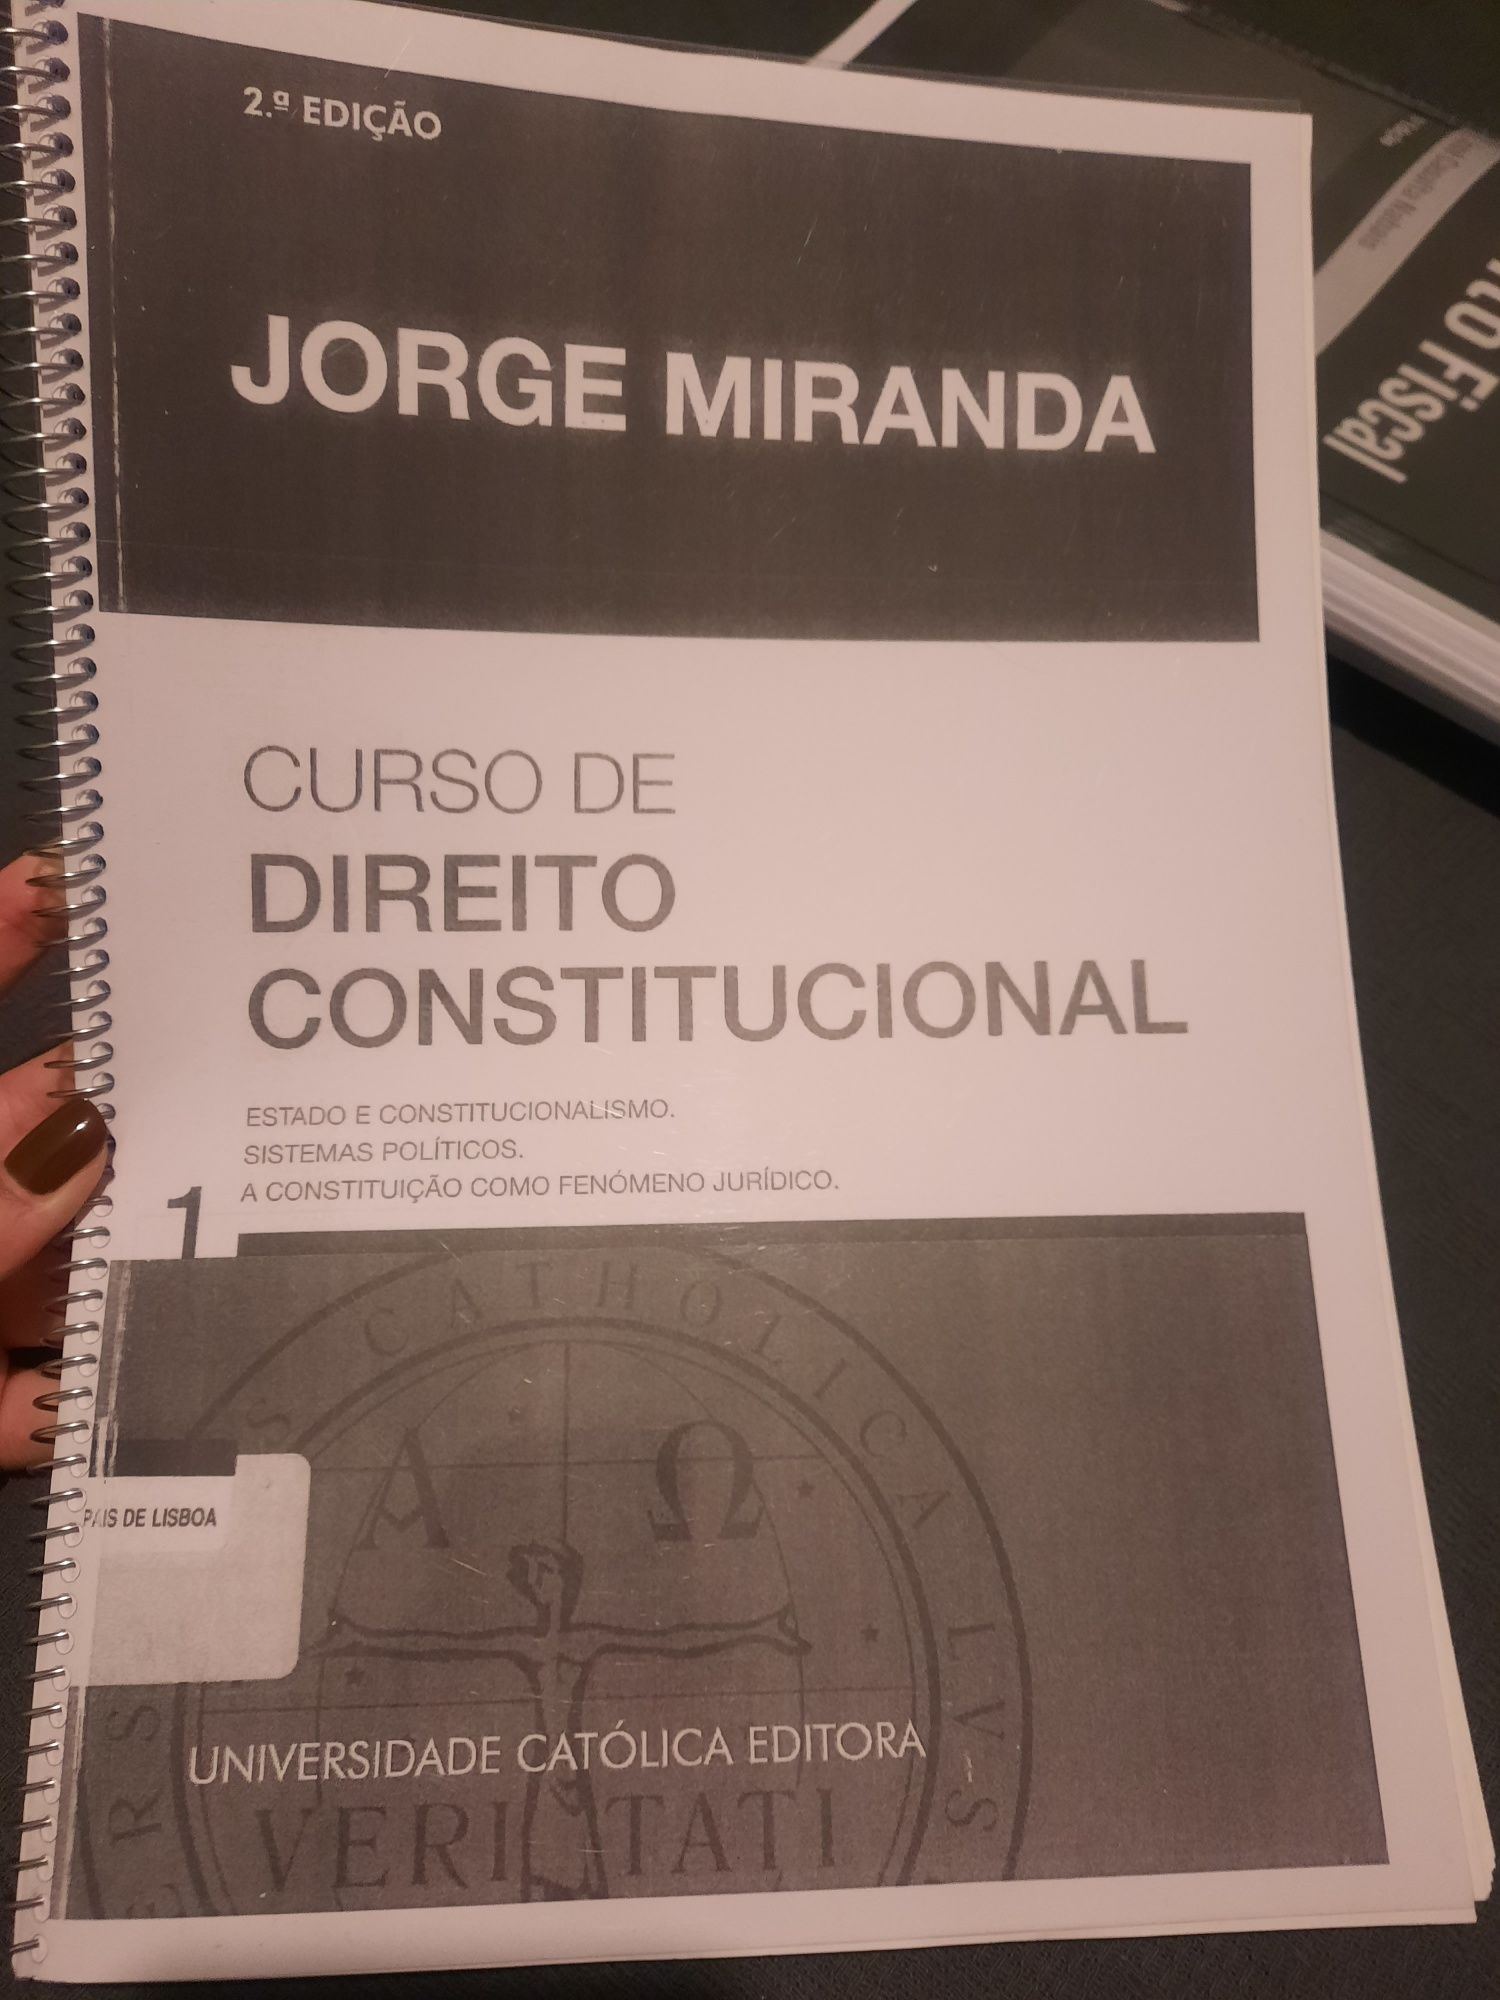 Livro "Curso de Direito Constitucional" , Parte 1, de Jorge Miranda